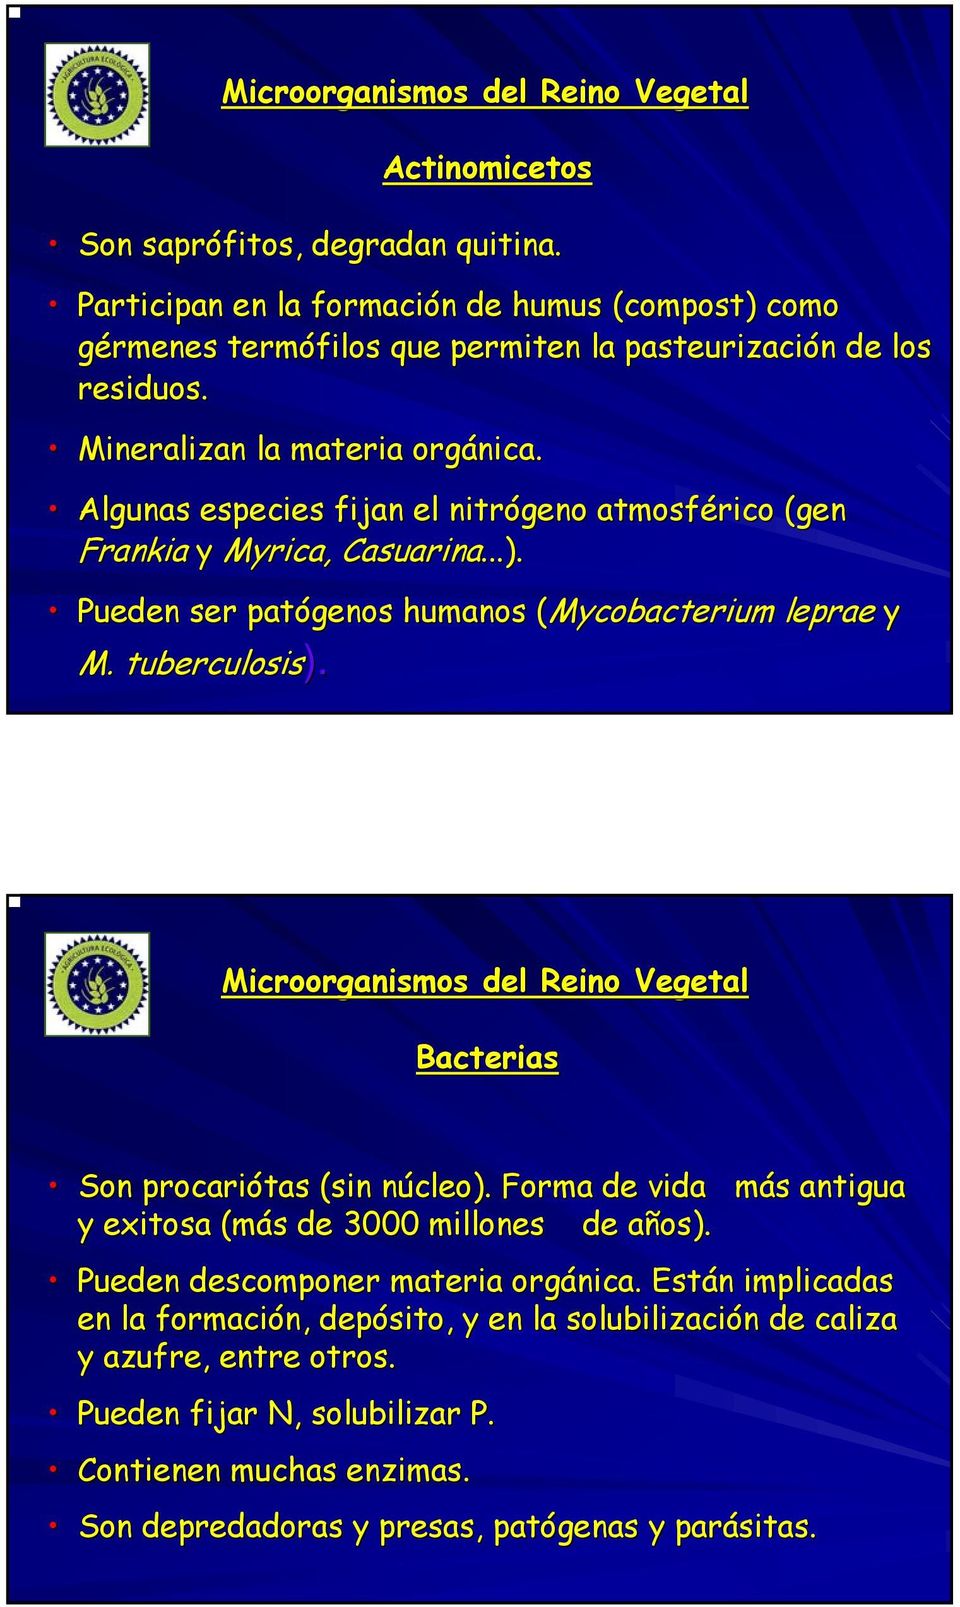 Algunas especies fijan el nitrógeno atmosférico (gen Frankia y Myrica,, Casuarina...). Pueden ser patógenos humanos ( (Mycobacterium leprae y M. tuberculosis). ).